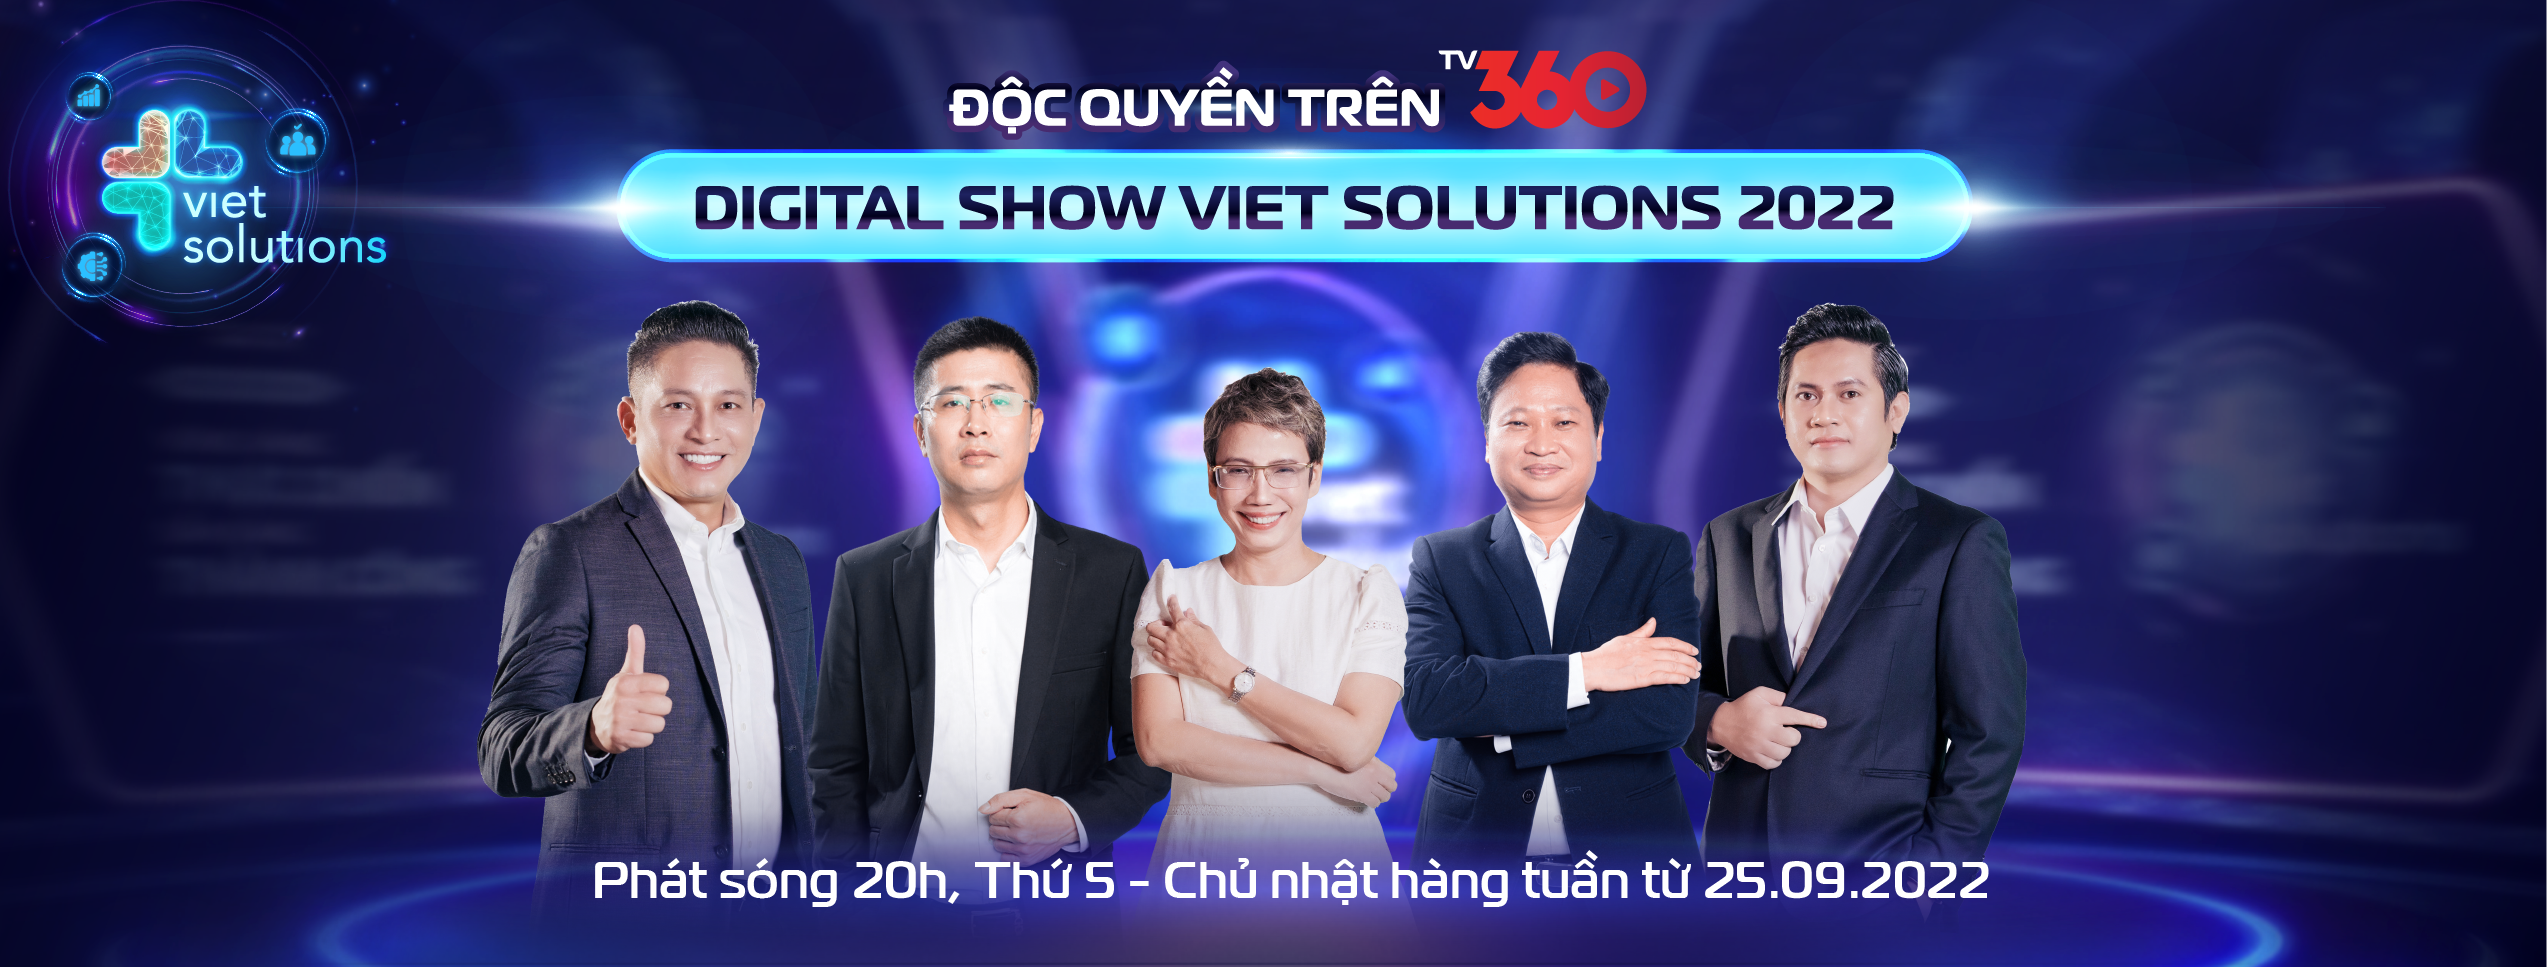 Lịch phát sóng Viet Solutions 2022 trên nền tảng TV360